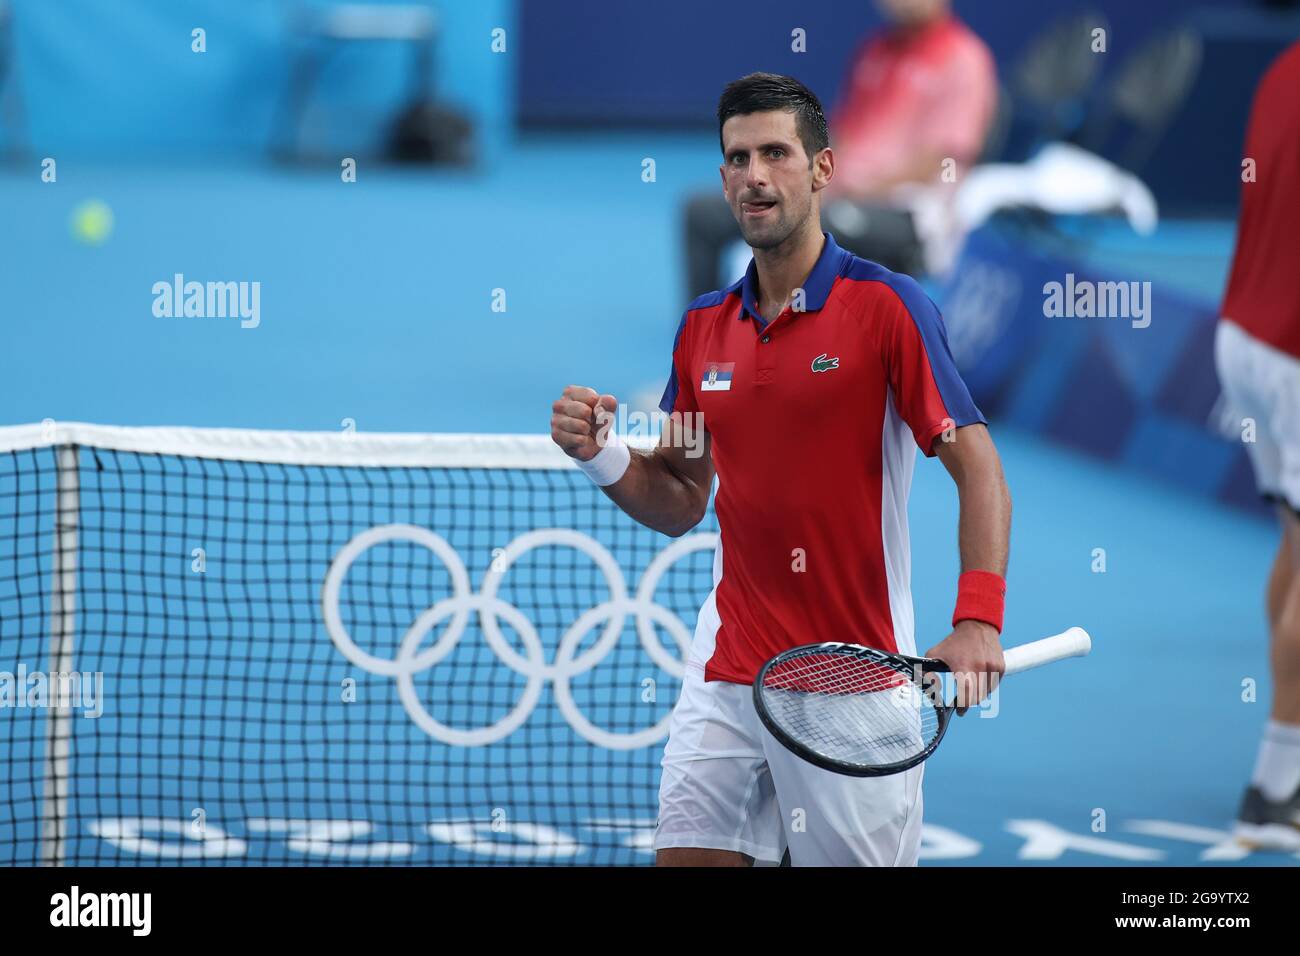 (210728) -- TOKIO, 28. Juli 2021 (Xinhua) -- Novak Djokovic aus Serbien reagiert während des Tennis Men's Singles in der dritten Runde gegen Alejandro Davidovich Fokina aus Spanien bei den Olympischen Spielen 2020 in Tokio, Japan, 28. Juli 2021. Stockfoto